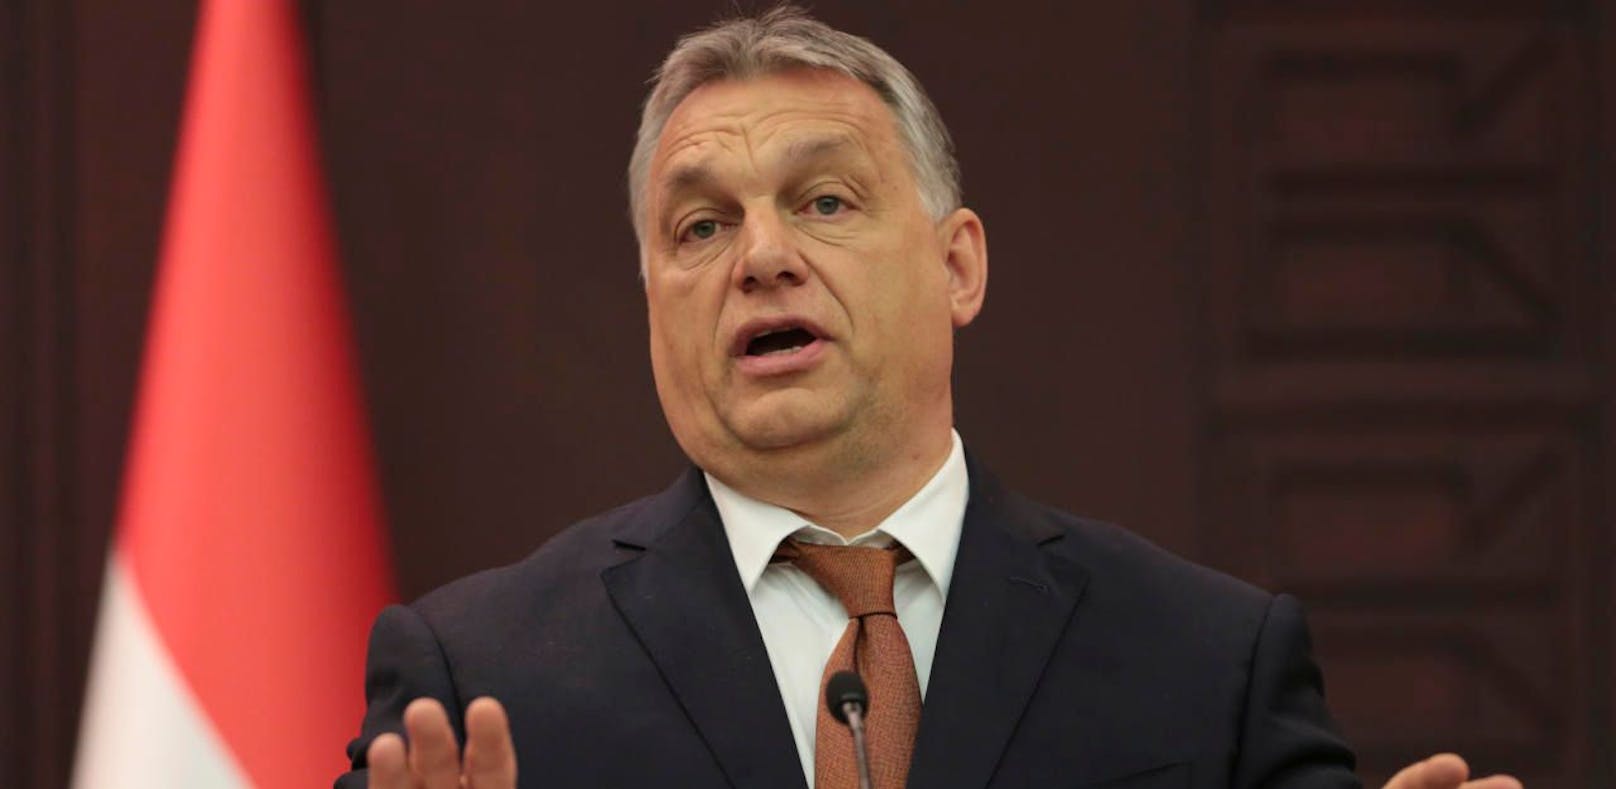 Ungarns Premier Victor Orban. Credit: Picturedesk